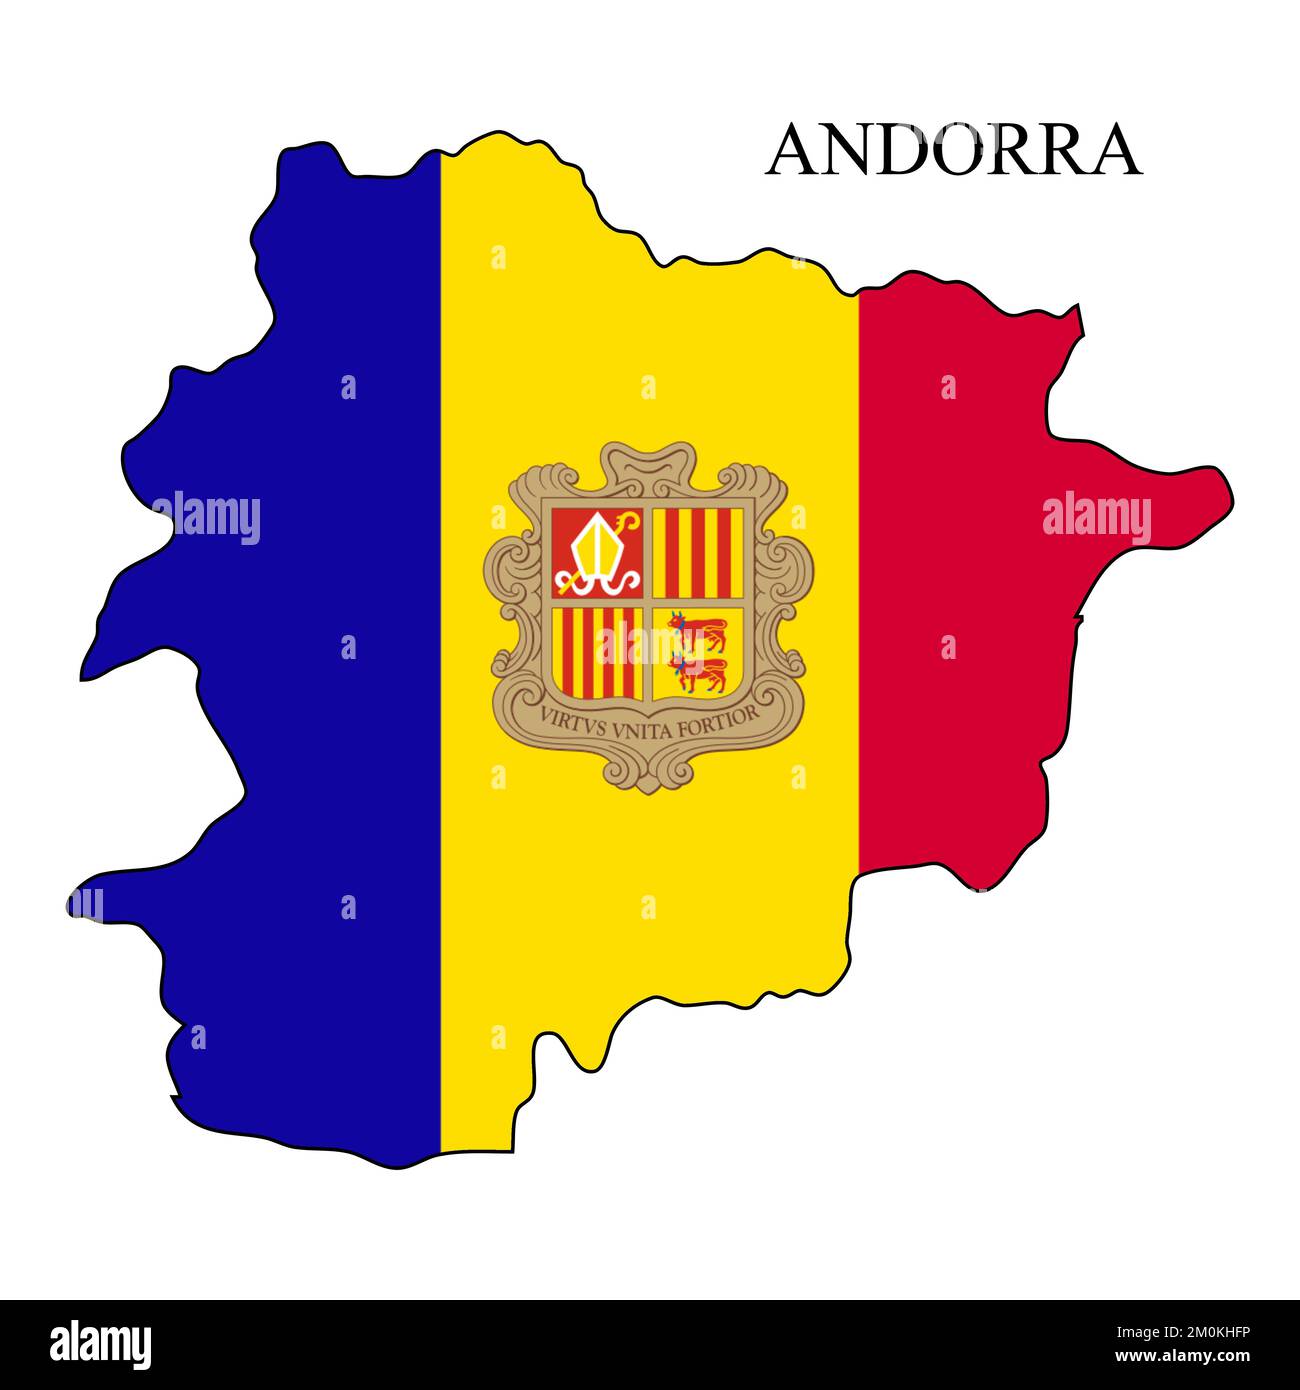 Darstellung des Andorra-Kartenvektors. Weltwirtschaft. Berühmtes Land. Südeuropa. Europa. Stock Vektor